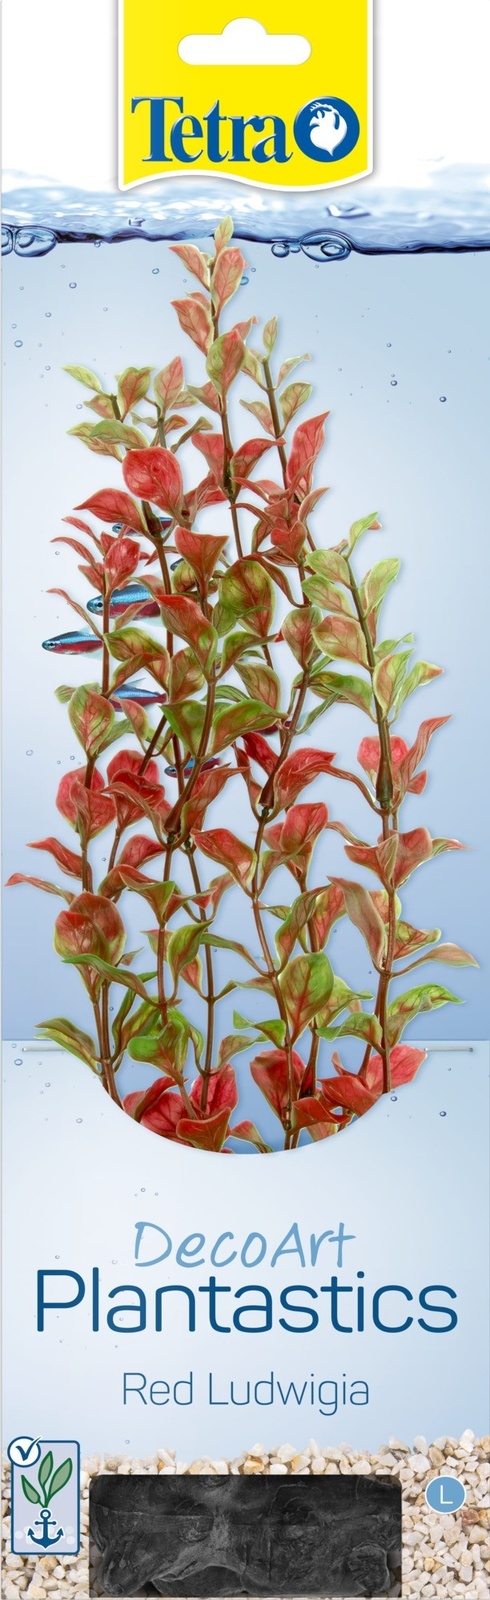 цена Tetra (оборудование) Tetra (оборудование) растение DecoArt Plantastics Red Ludvigia 30 см (115 г)